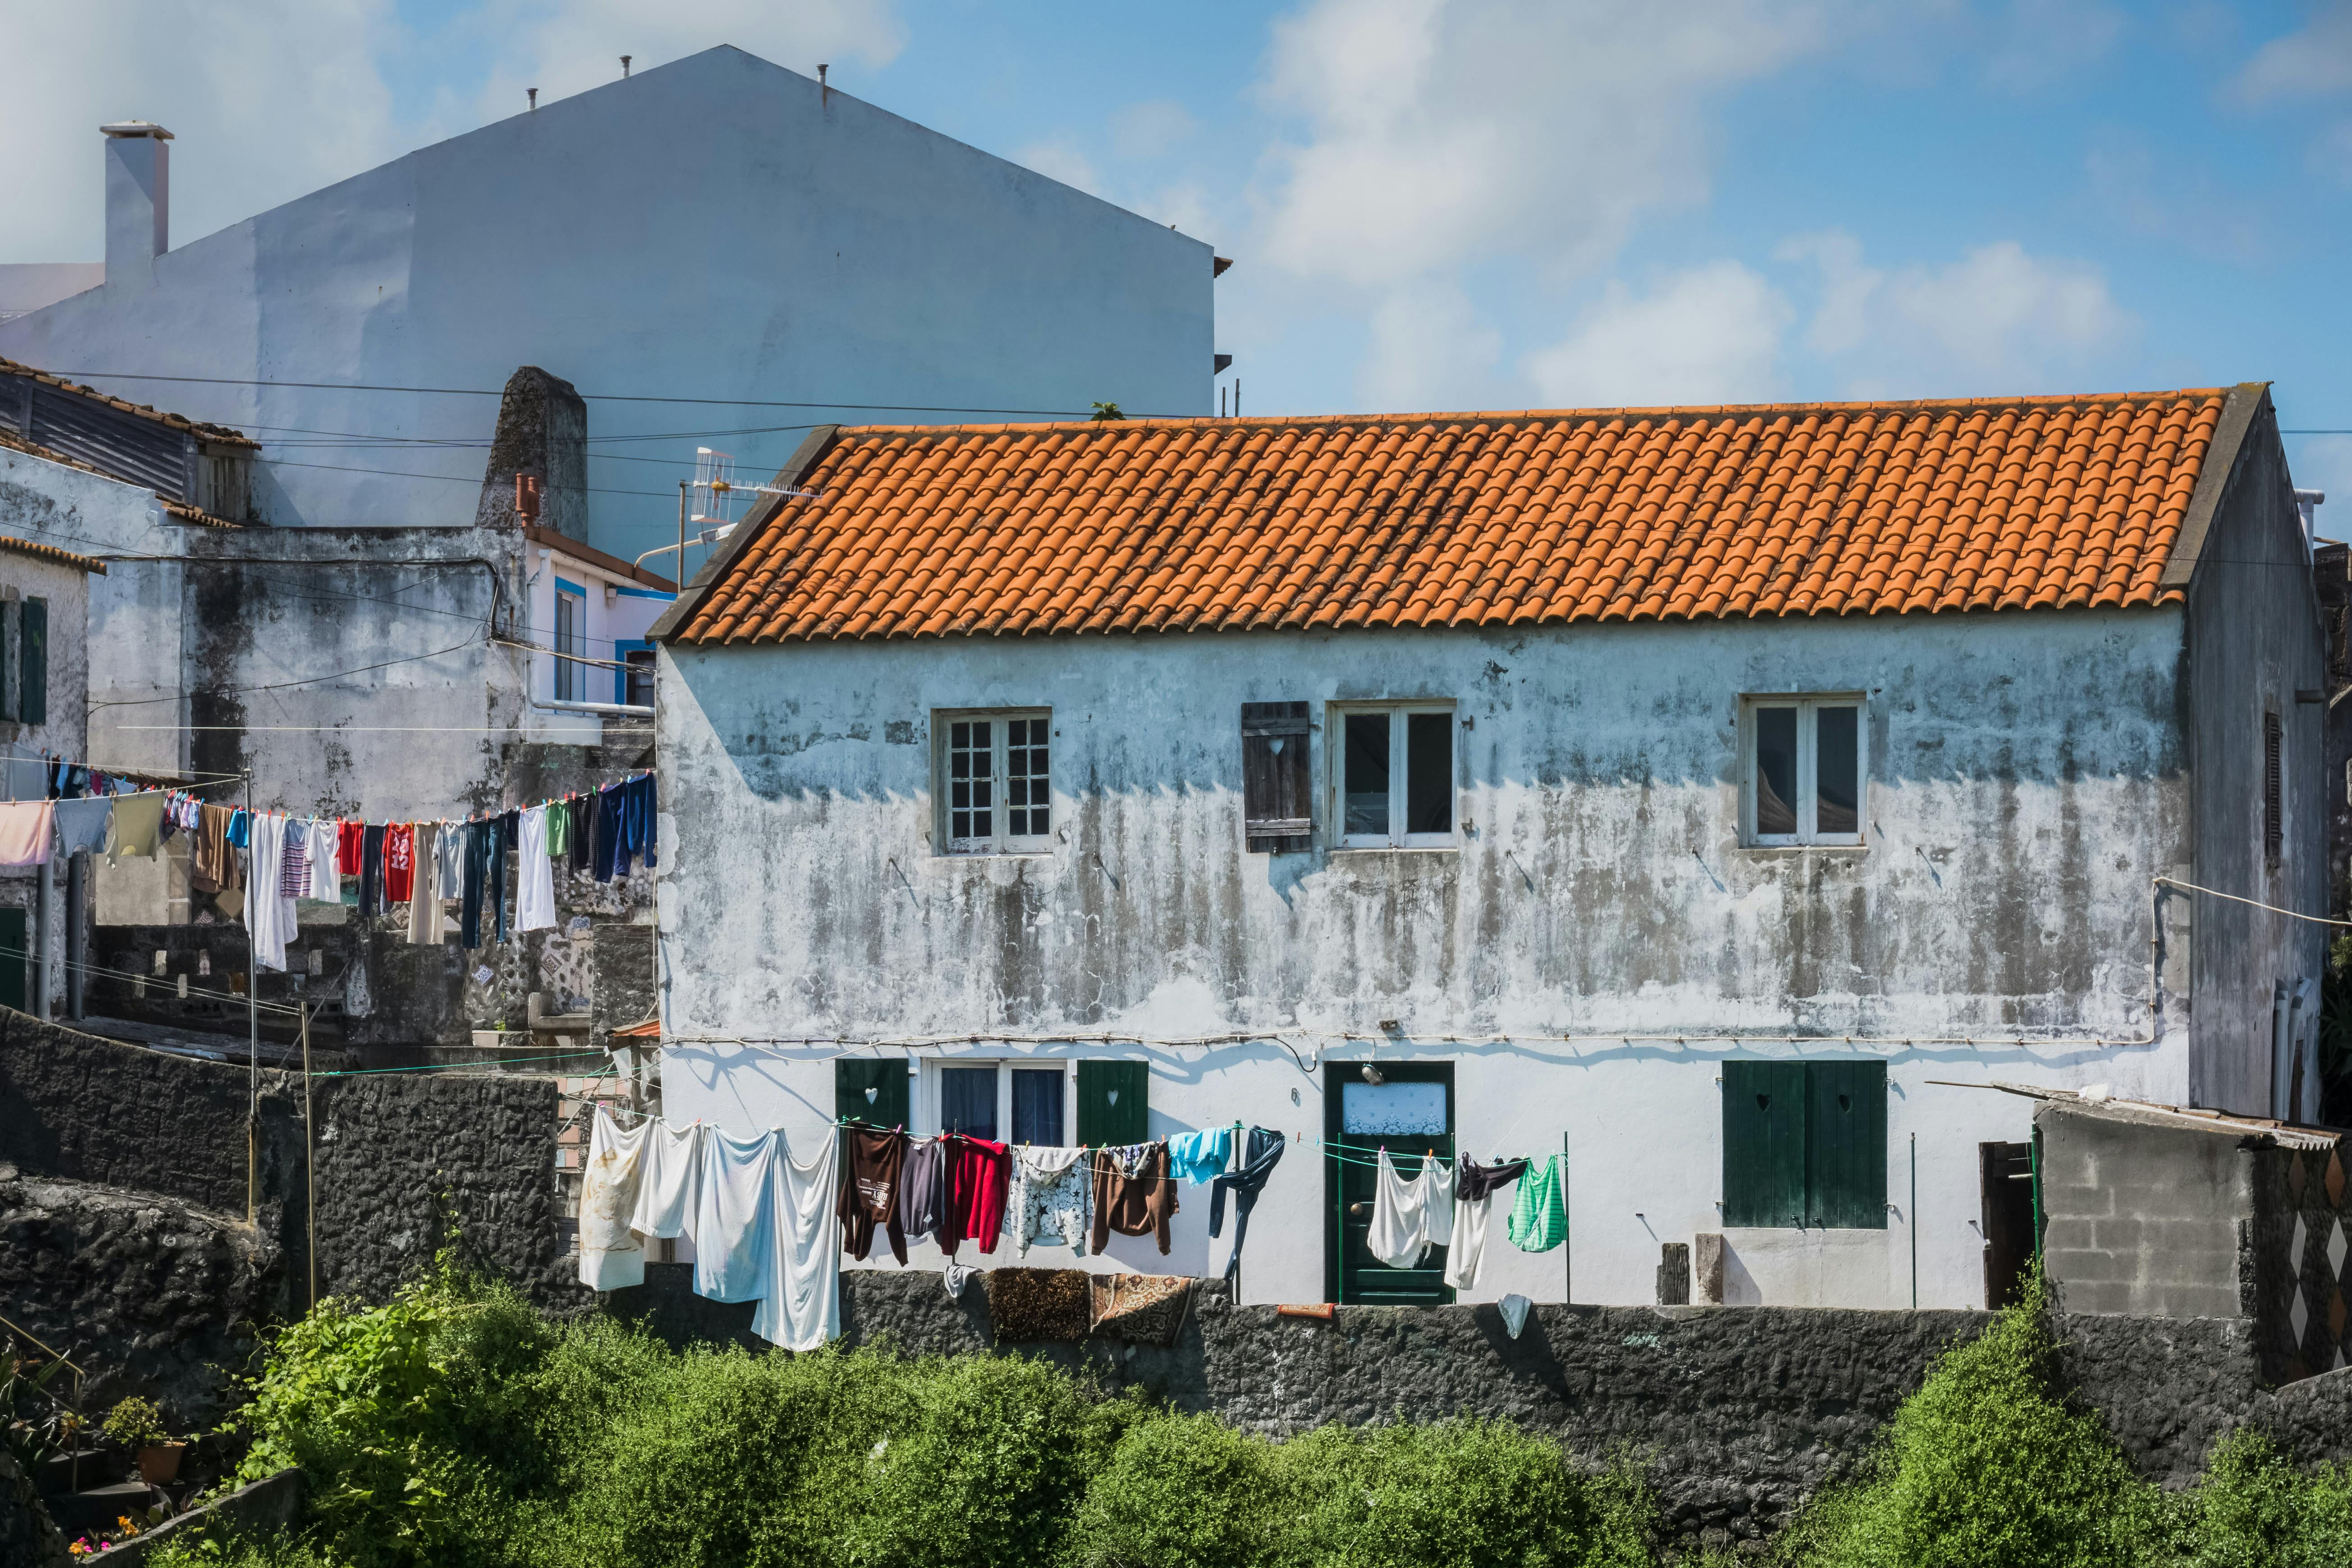 22bet Site Oficial Portugal: Conheça a Melhor Plataforma de Apostas e Cassino Online